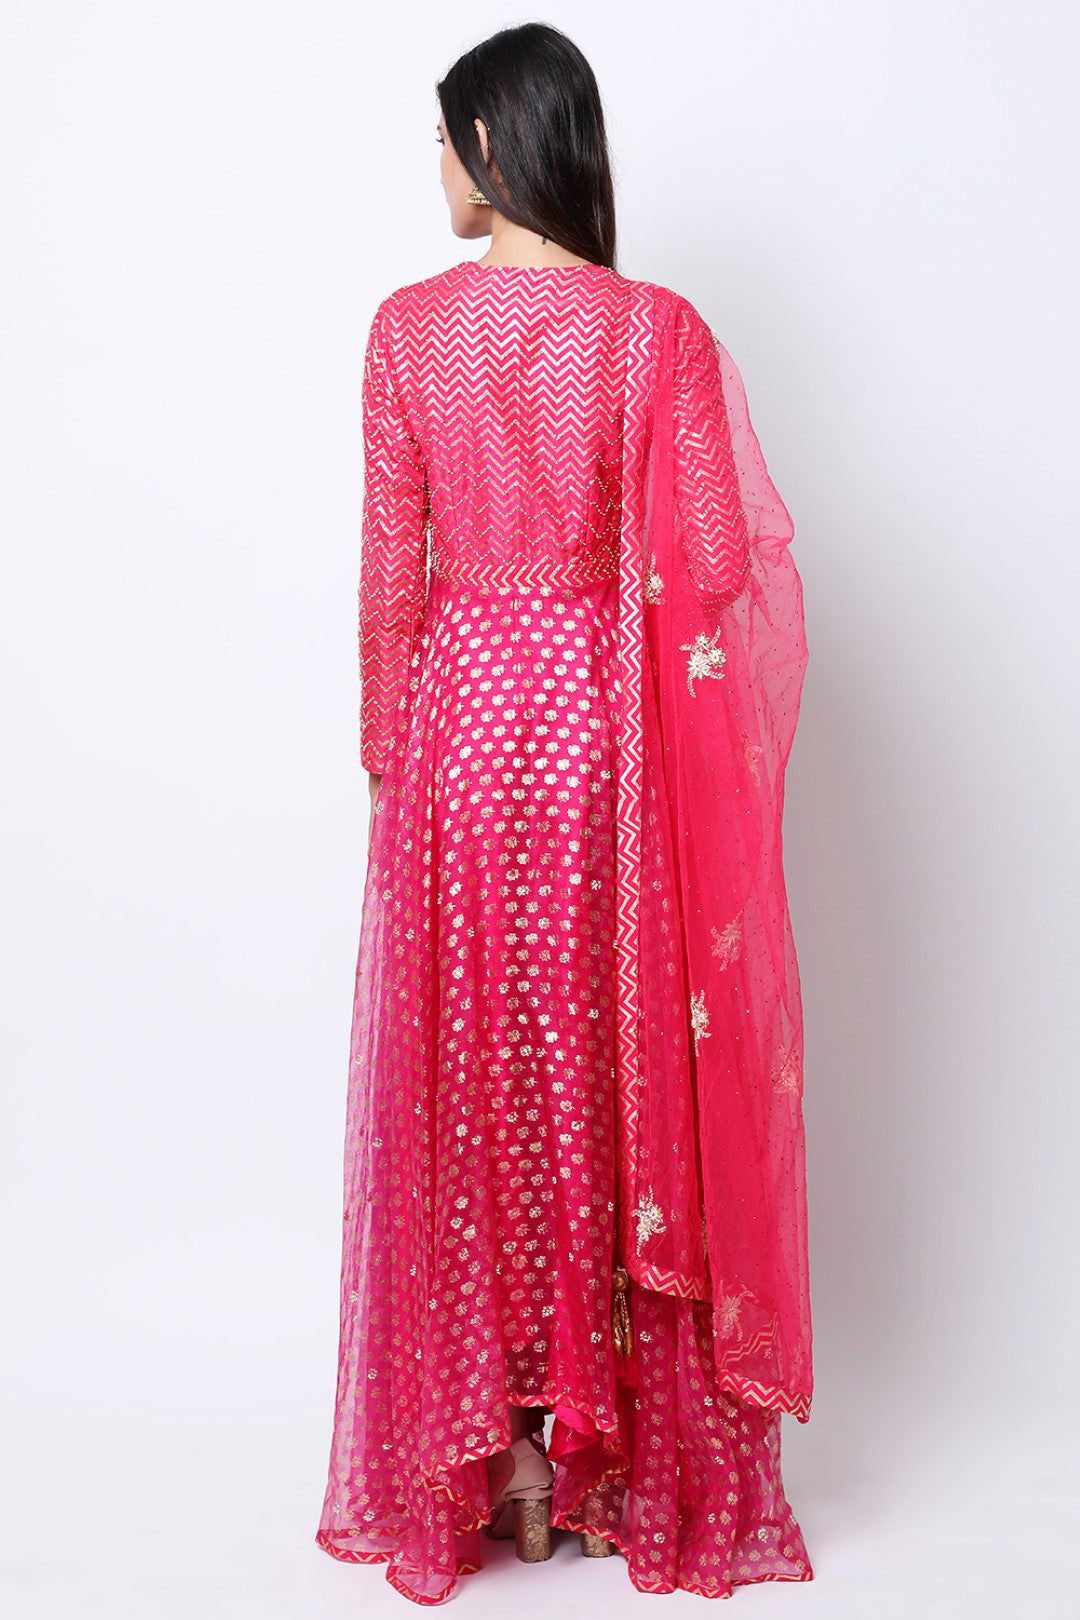 Rani Pink lotus and chevron gold printed organza kalidar  with mukesh embroidered dupatta and churidar.